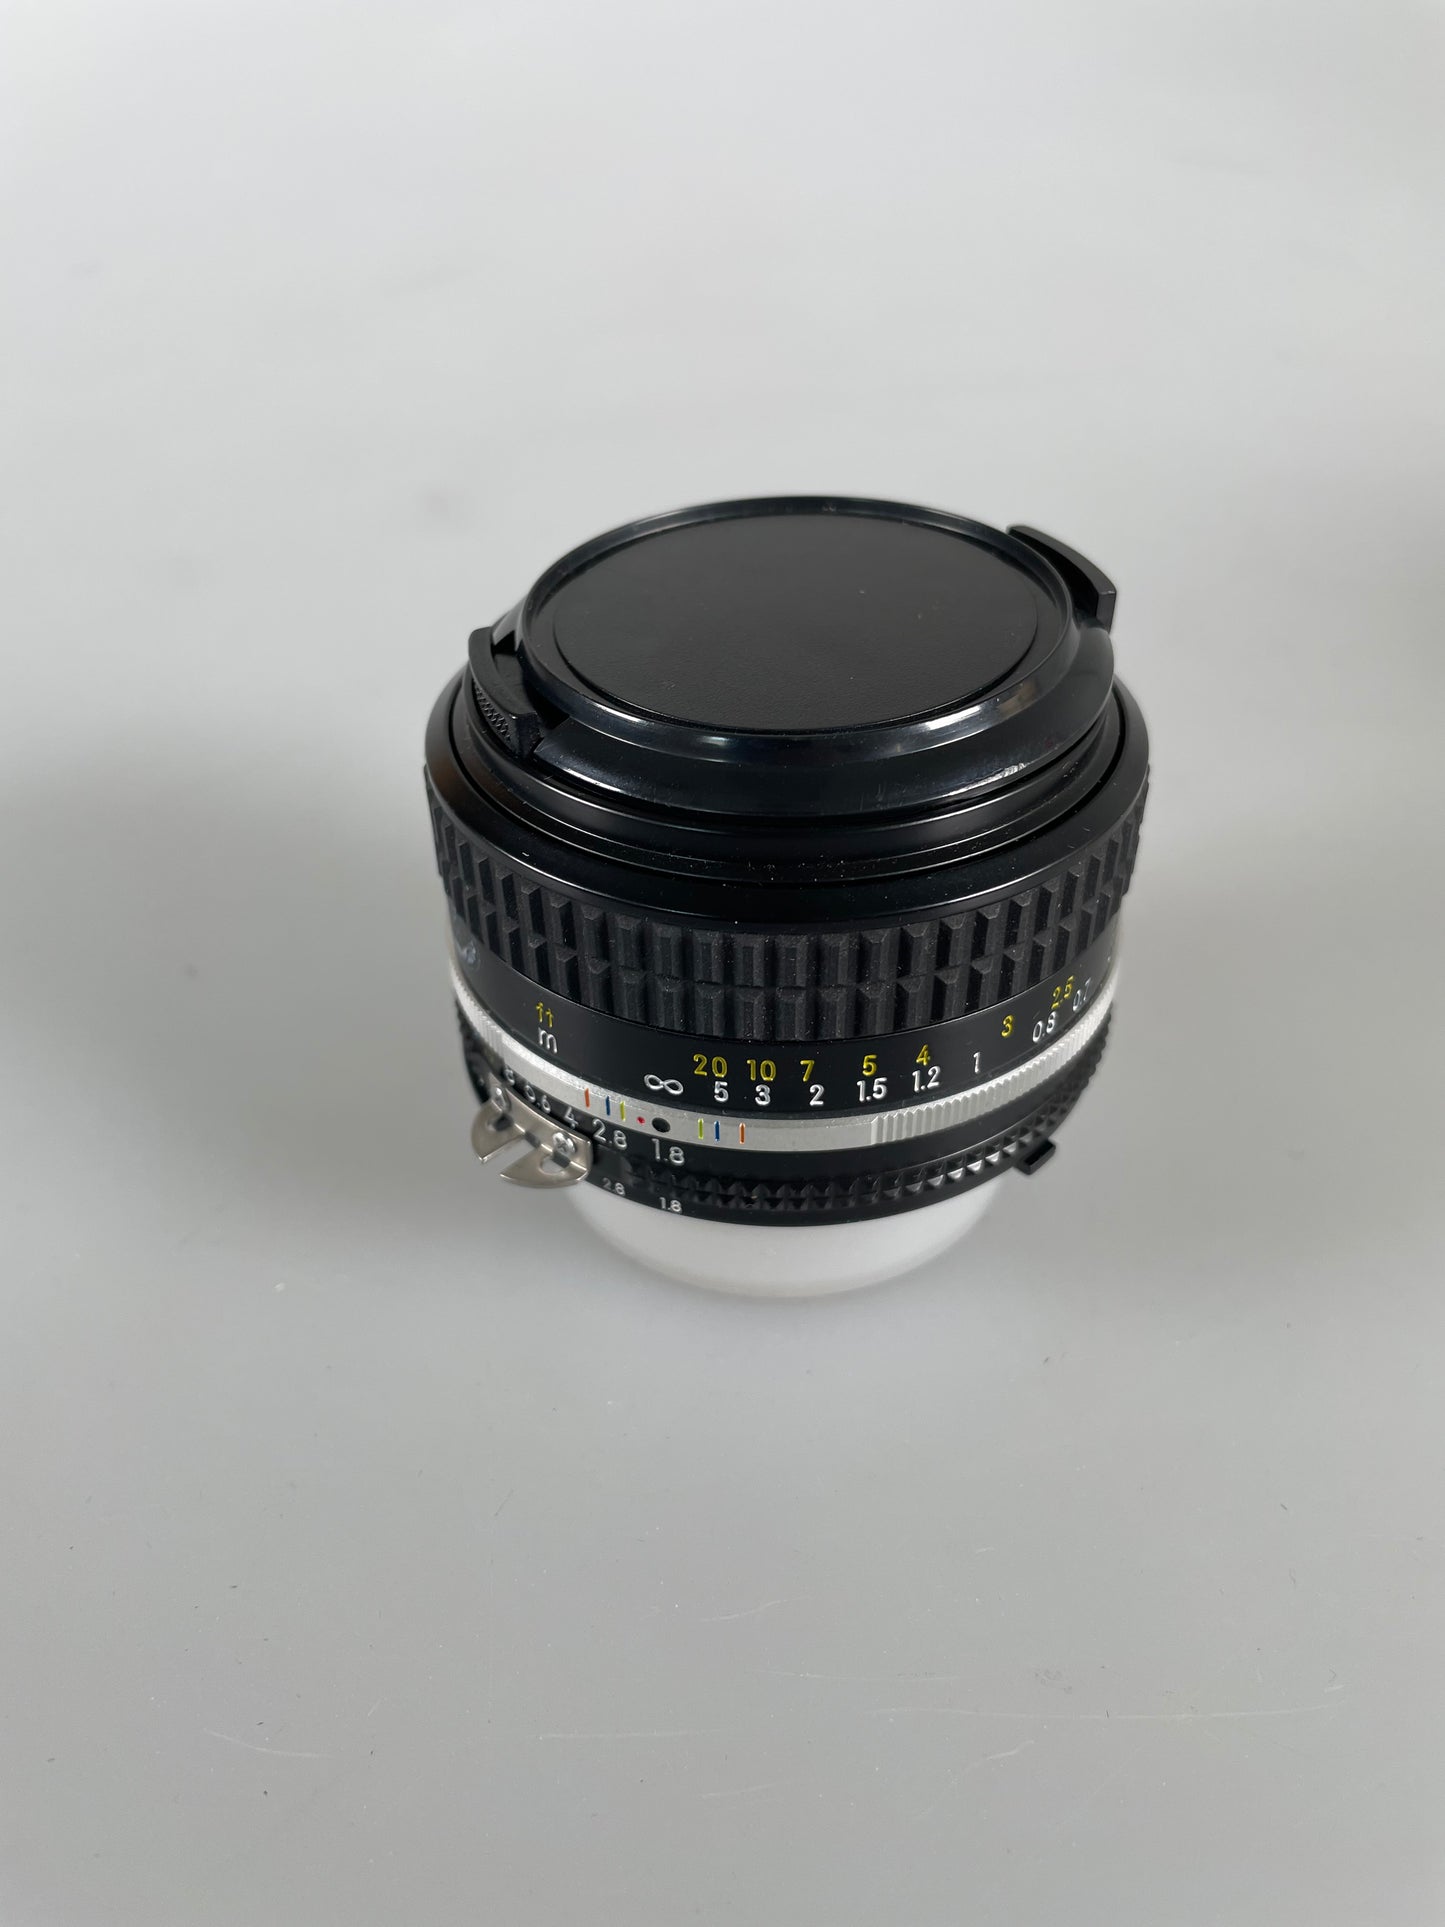 Nikon Nikkor Ais 50mm f1.8 Lens Prime SLR in box